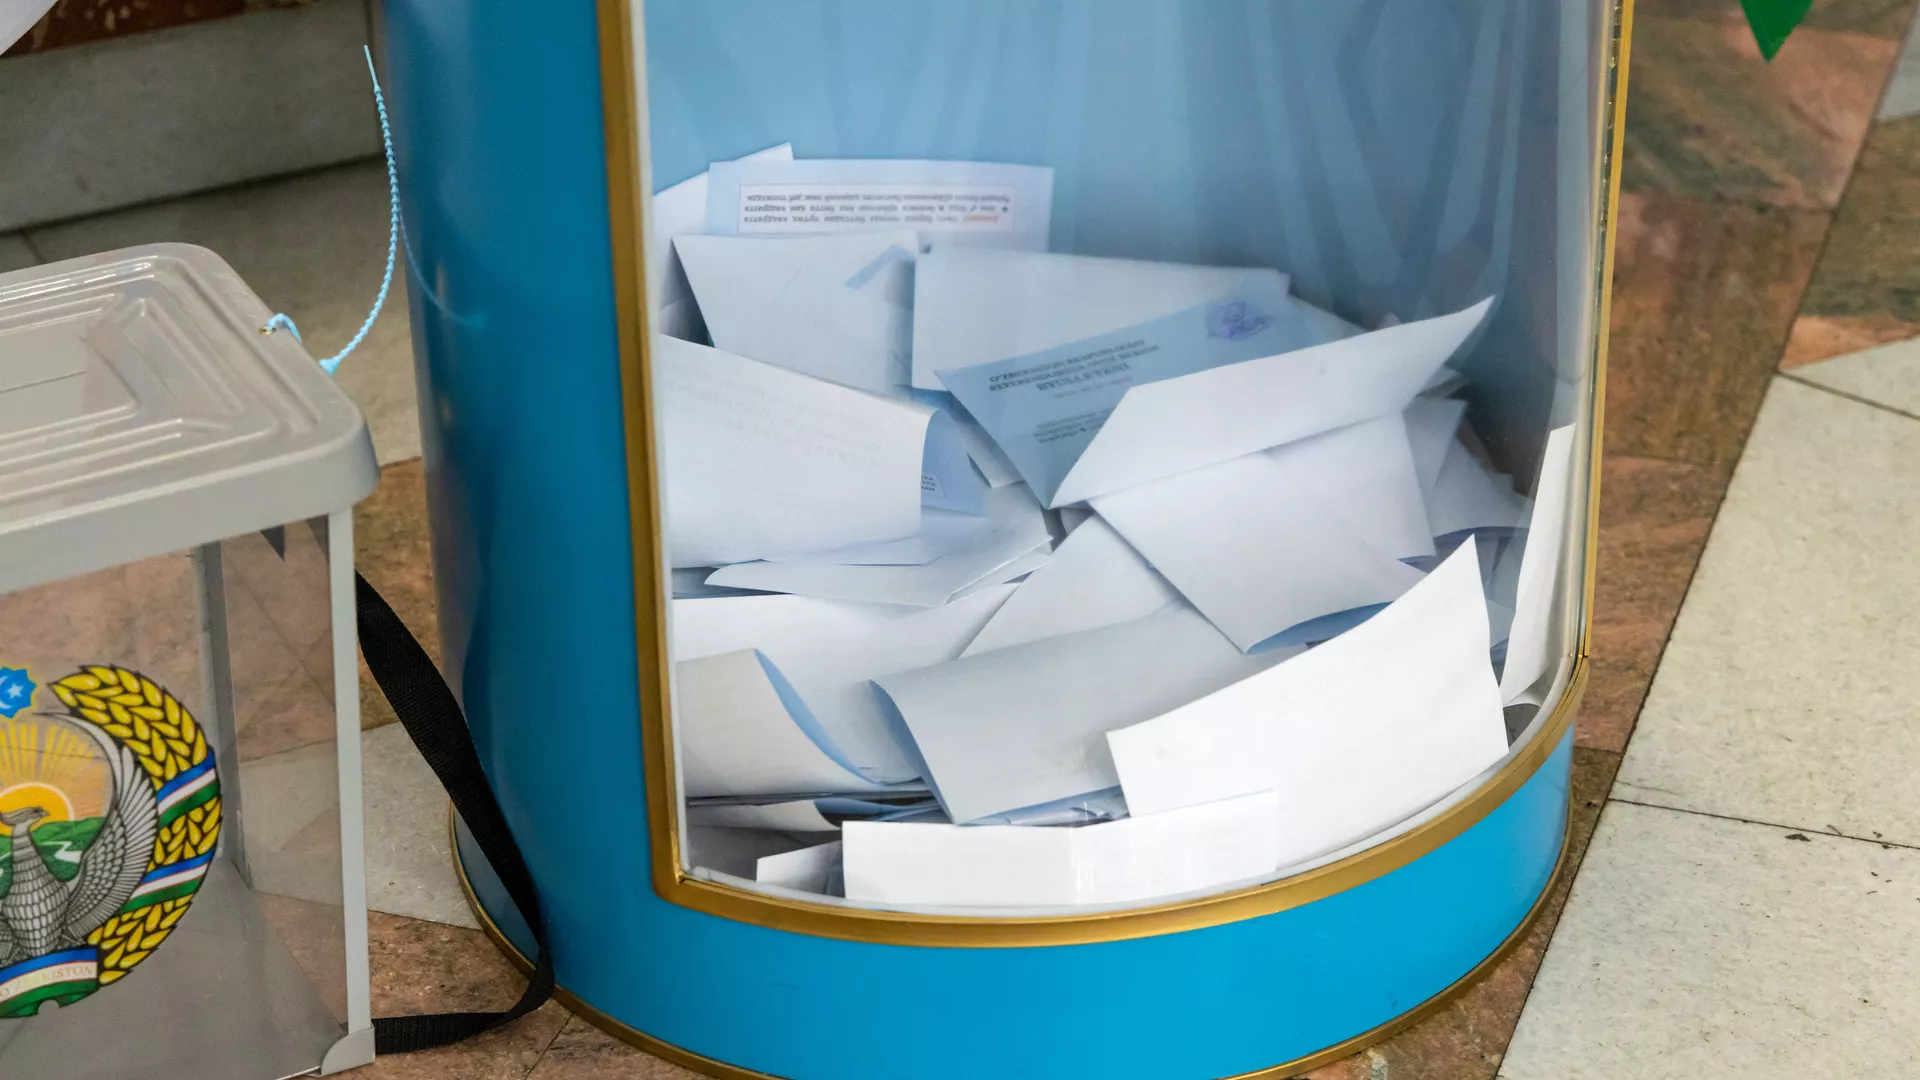  Как выглядит избирательный бюллетень для президентских выборов в Узбекистане